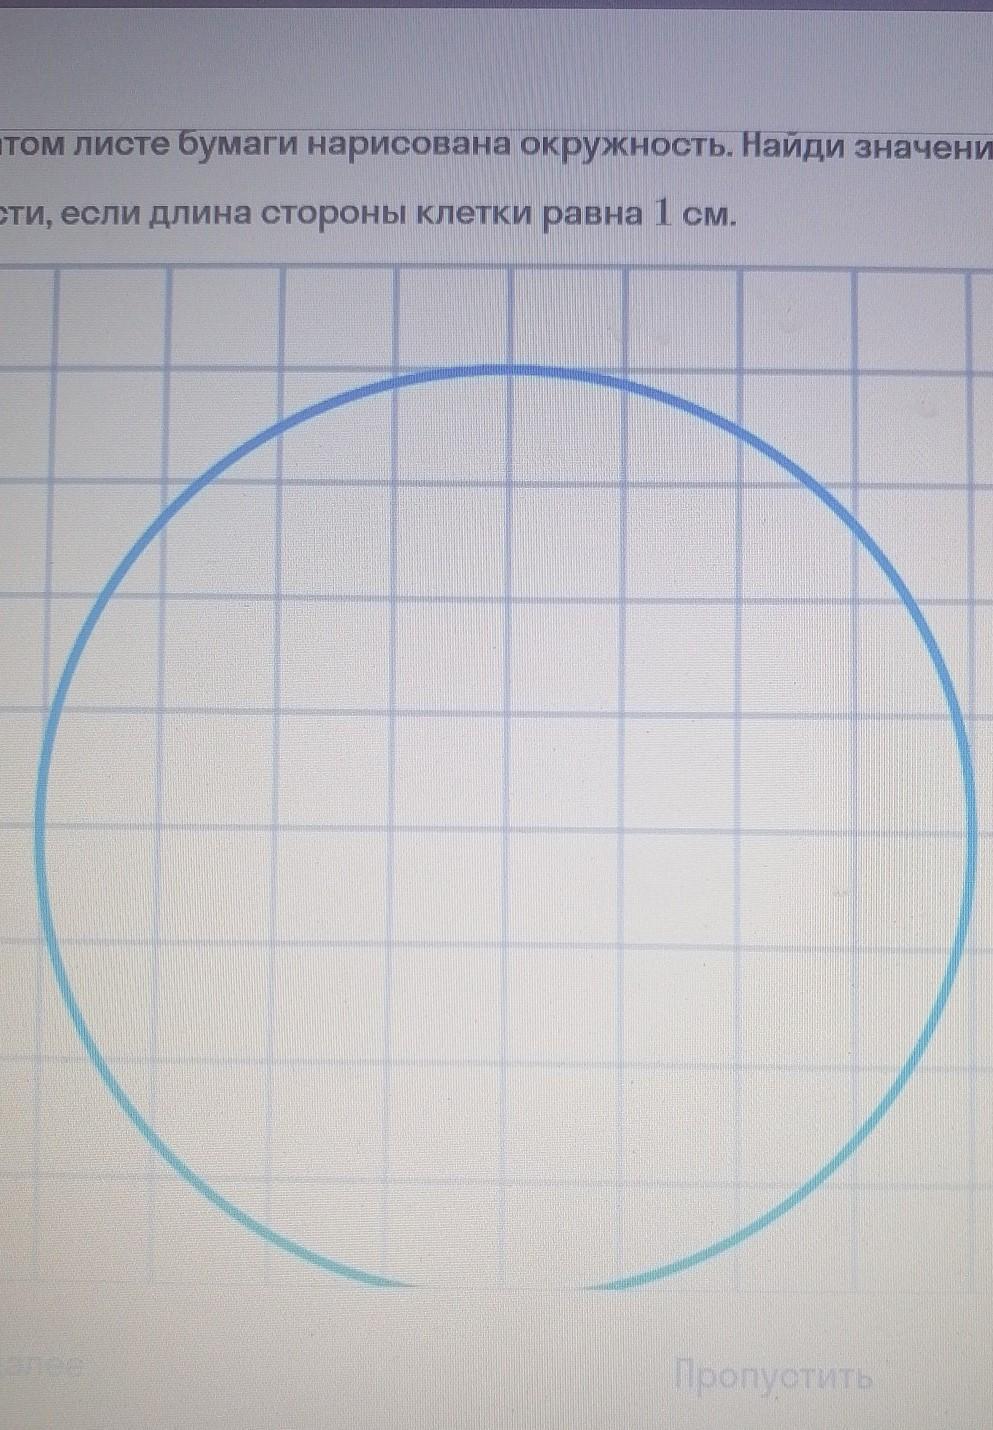 Как нарисовать круг по клеточкам